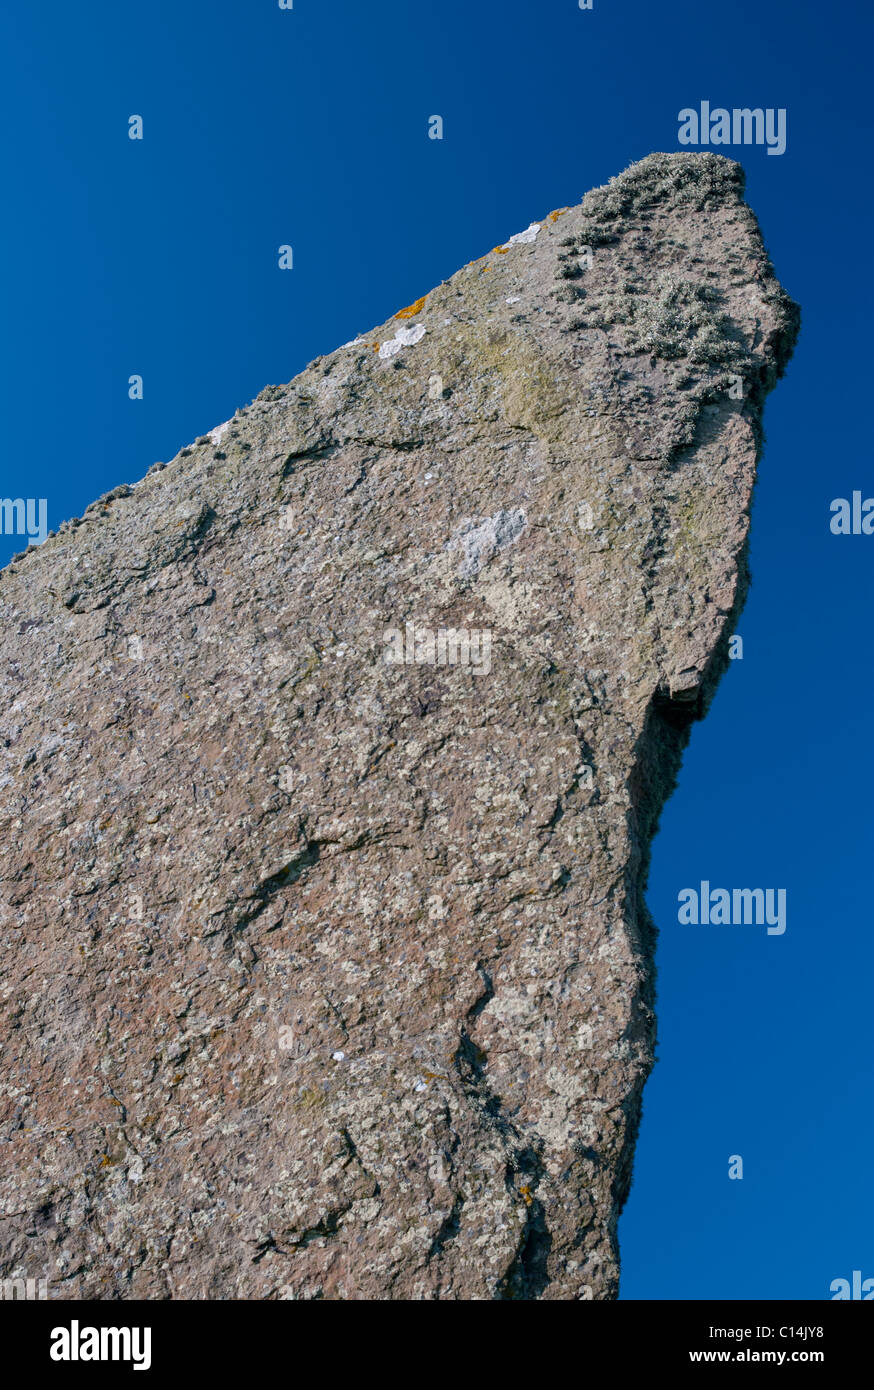 Le pietre di Stenness isole Orcadi Scozia REGNO UNITO Foto Stock